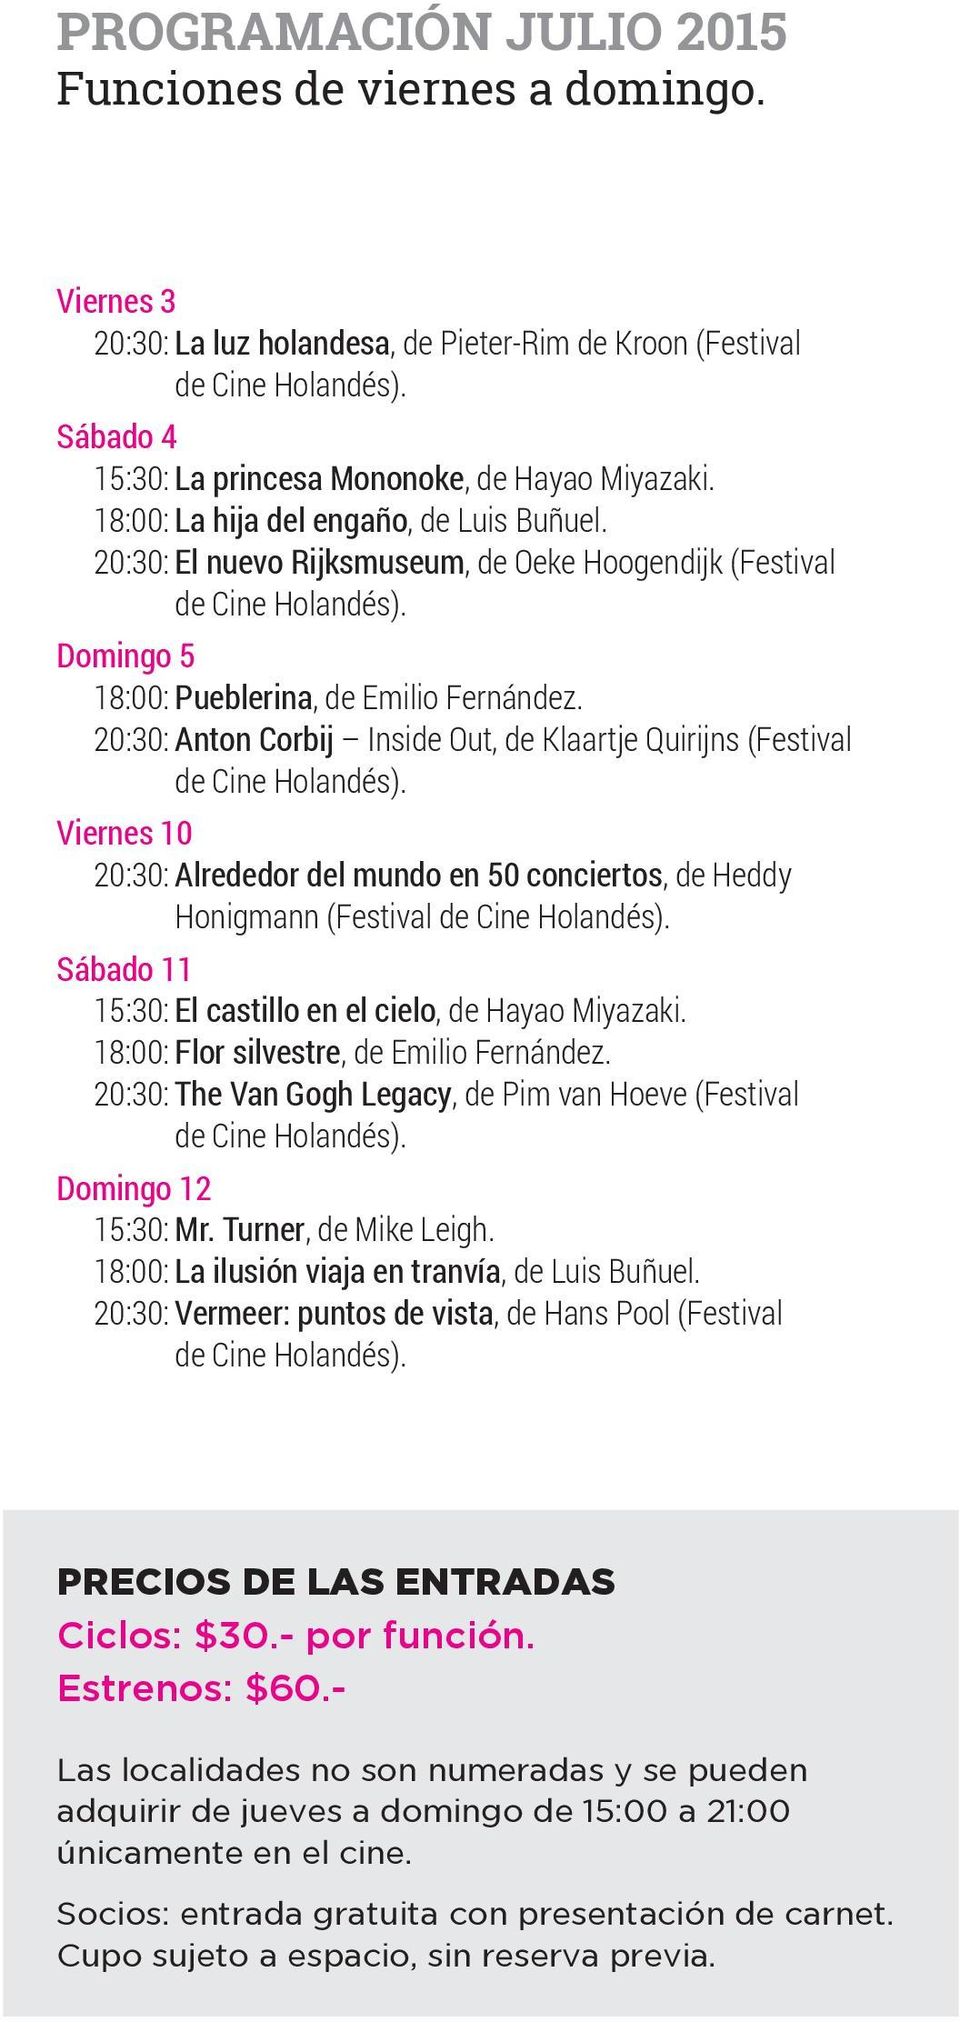 20:30: Anton Corbij Inside Out, de Klaartje Quirijns (Festival Viernes 10 20:30: Alrededor del mundo en 50 conciertos, de Heddy Honigmann (Festival Sábado 11 15:30: El castillo en el cielo, de Hayao